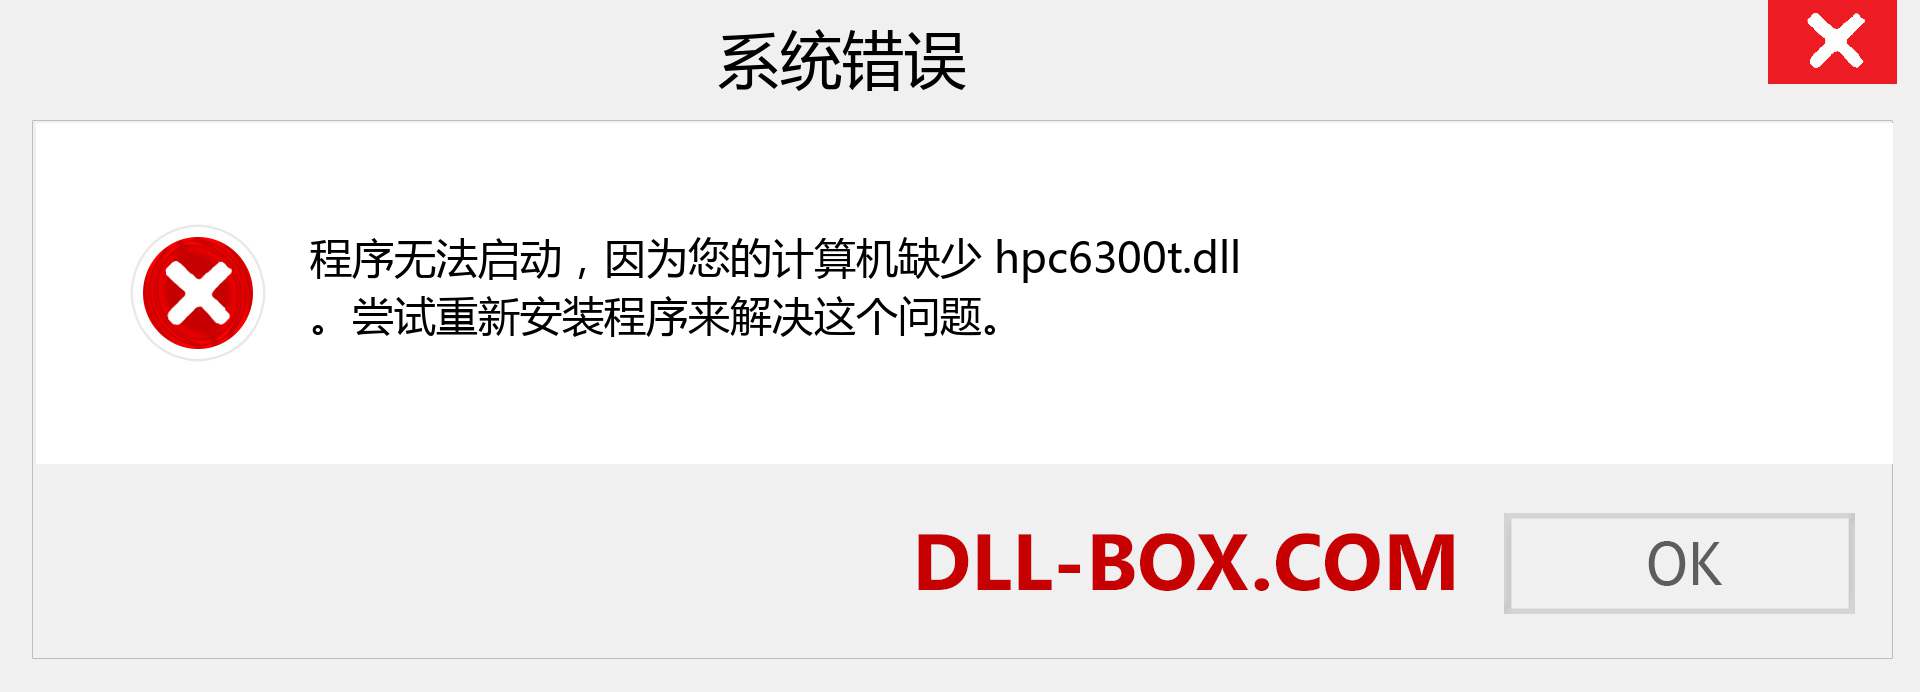 hpc6300t.dll 文件丢失？。 适用于 Windows 7、8、10 的下载 - 修复 Windows、照片、图像上的 hpc6300t dll 丢失错误